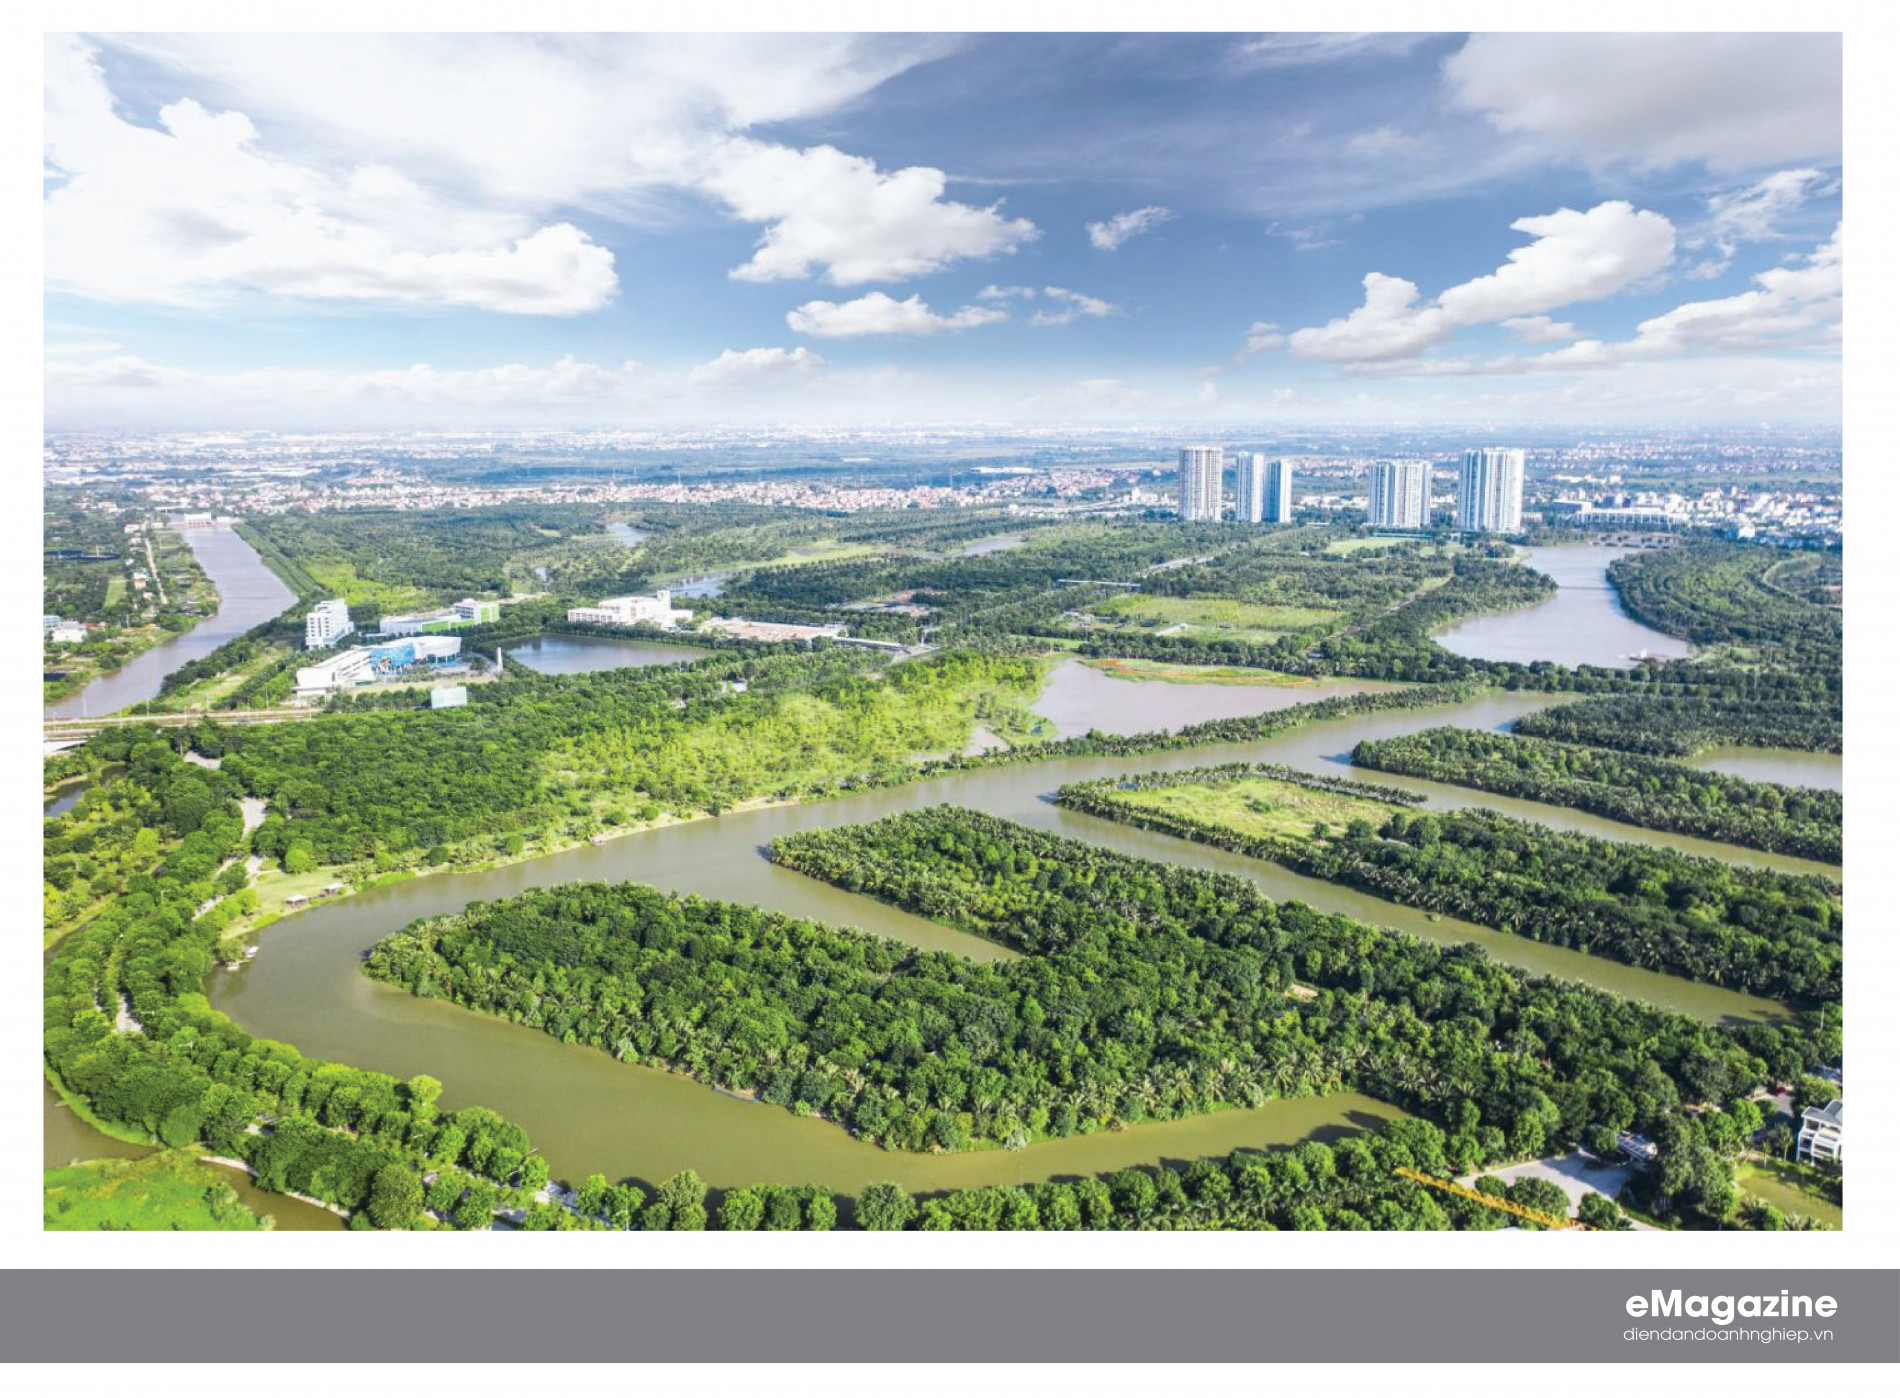 Đô thị sông Hồng - Sức hấp dẫn về một thành phố sáng tạo, xanh và bền vững